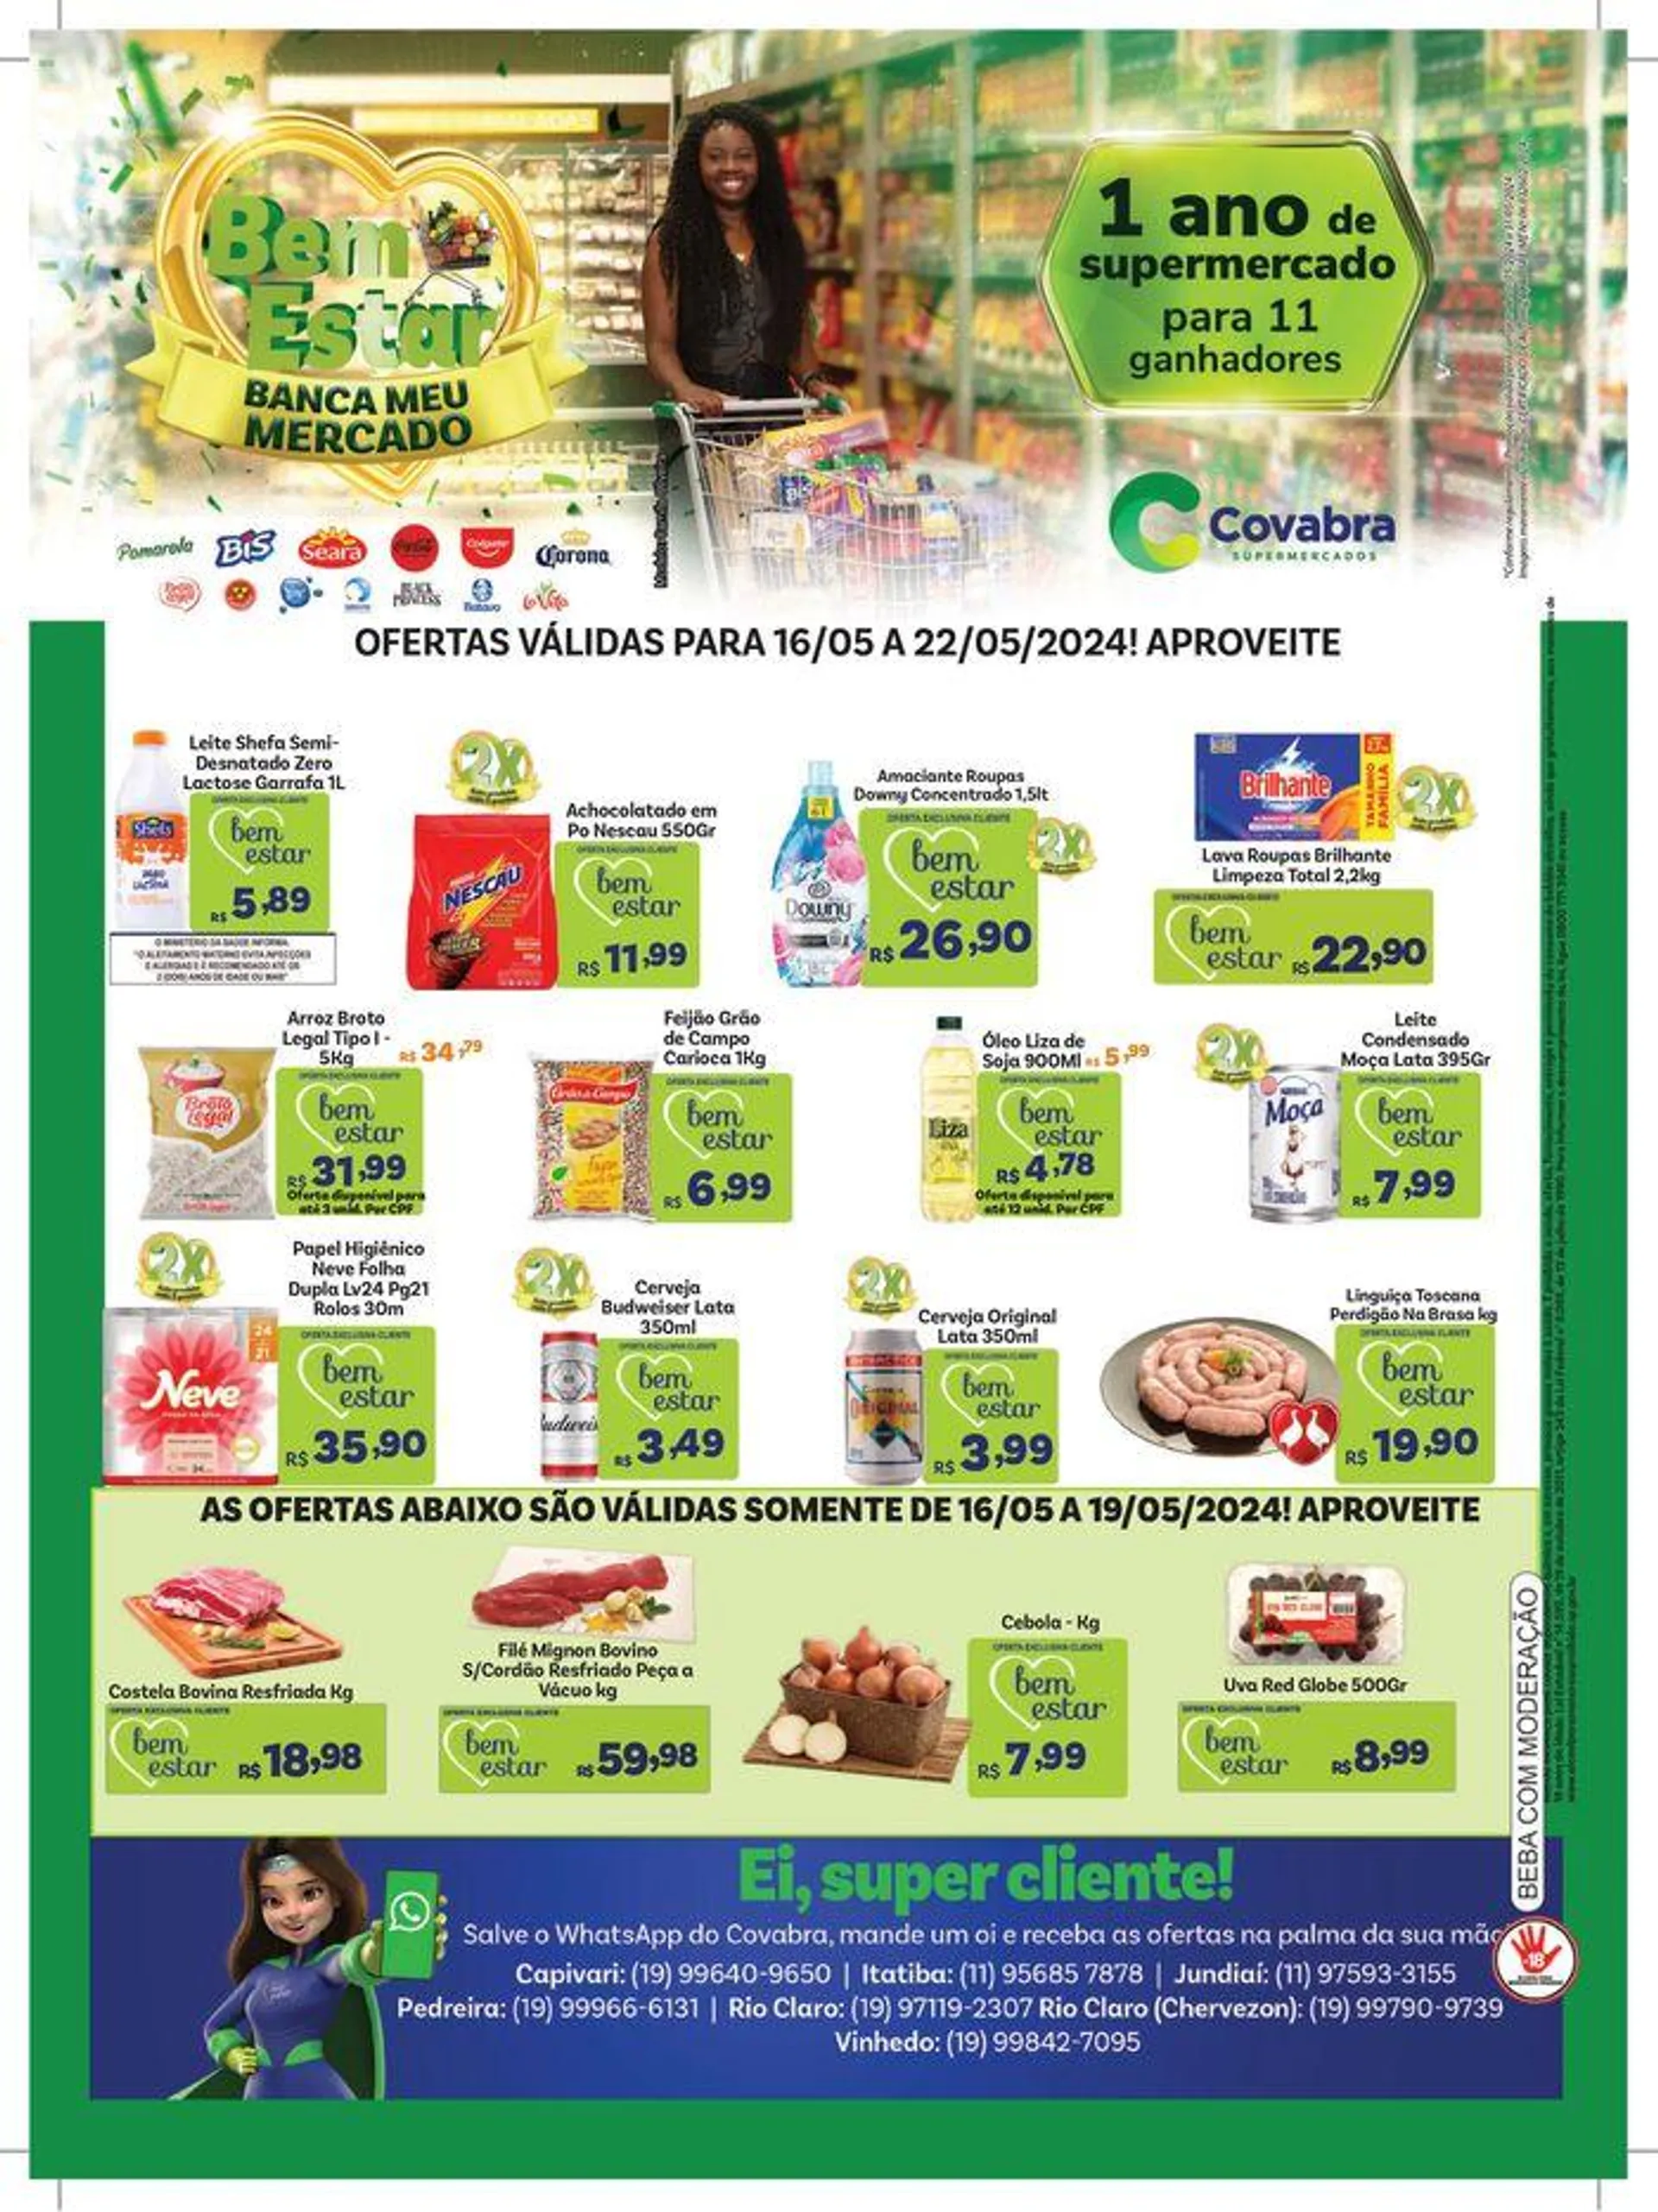 Ofertas Covabra Supermercados - 1